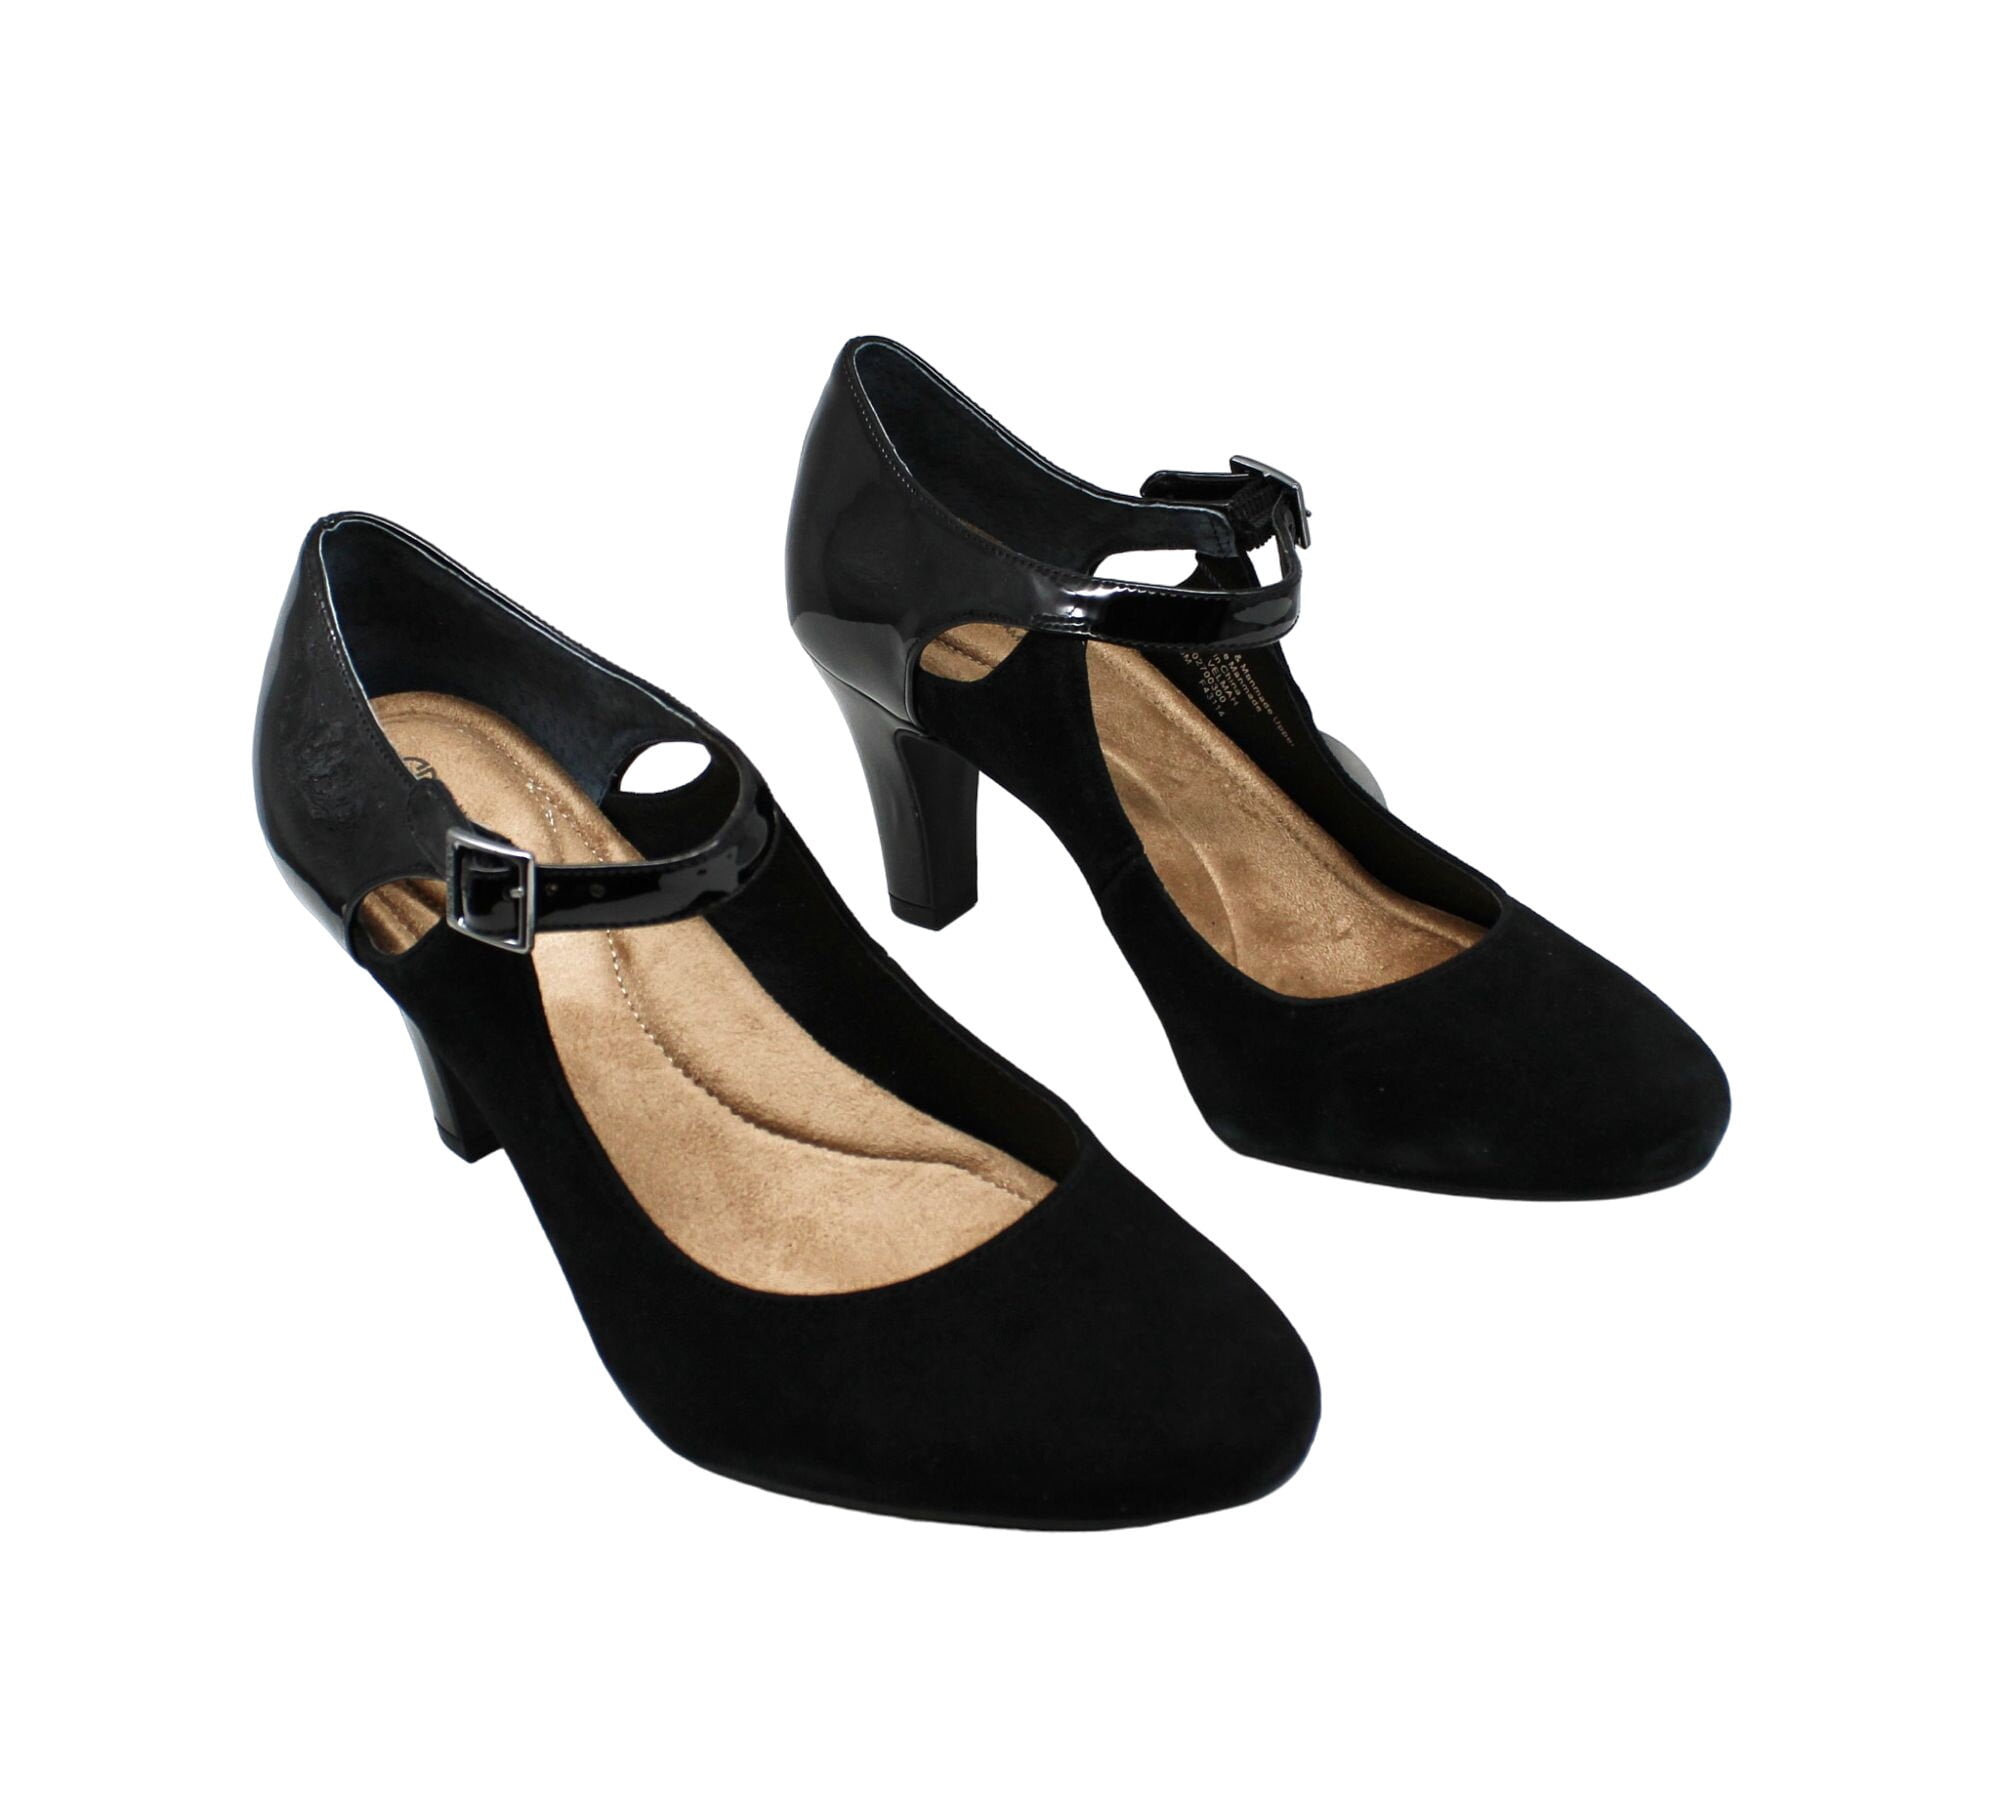 Giani Bernini Shoes Size 6, Women's Fashion, Footwear, Flats